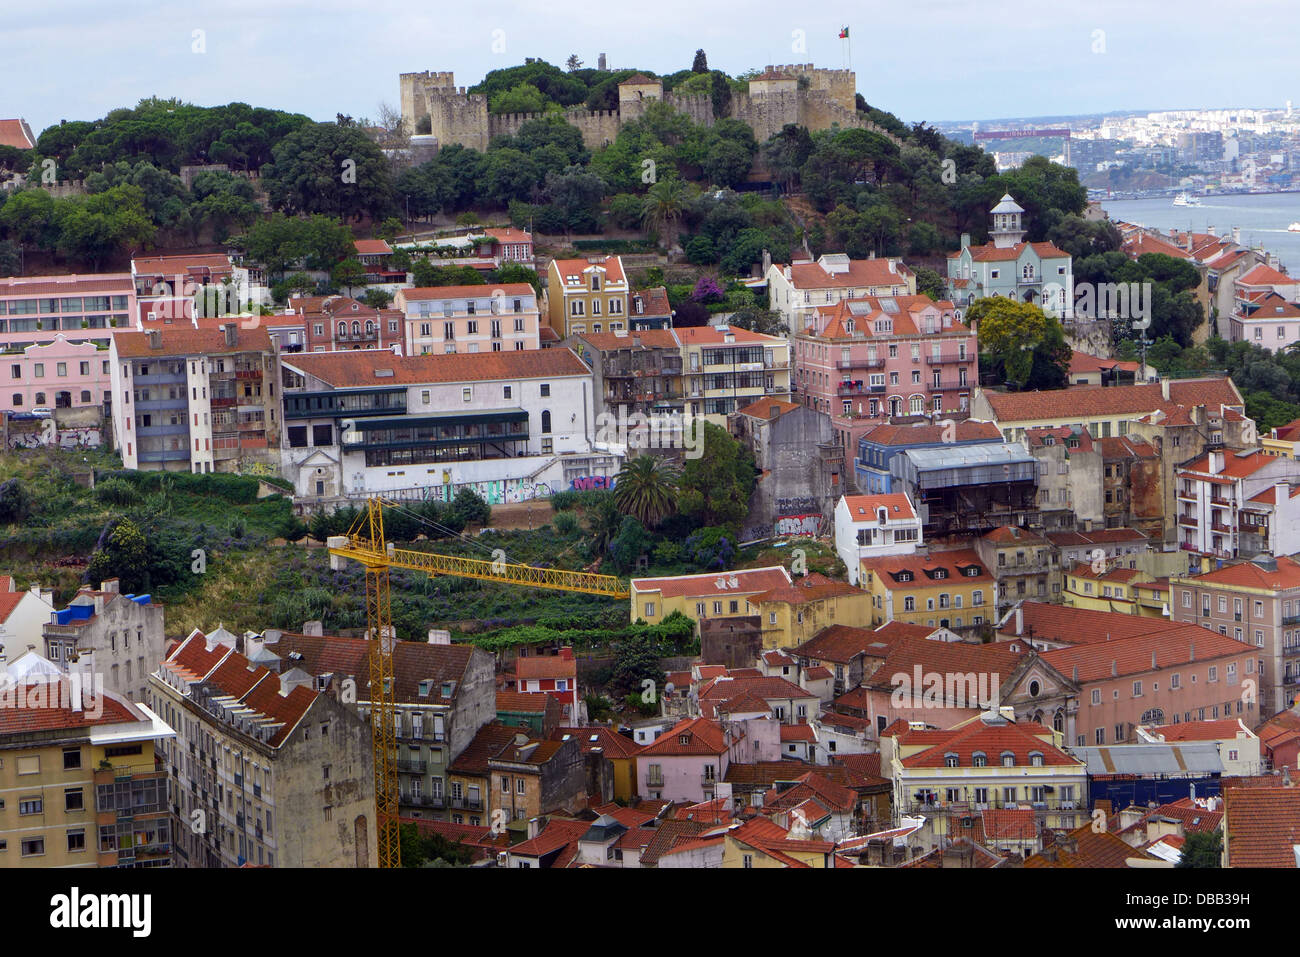 Saint George castle situato su uno dei sette colli di Lisbona Portogallo e la zona circostante. Foto Stock